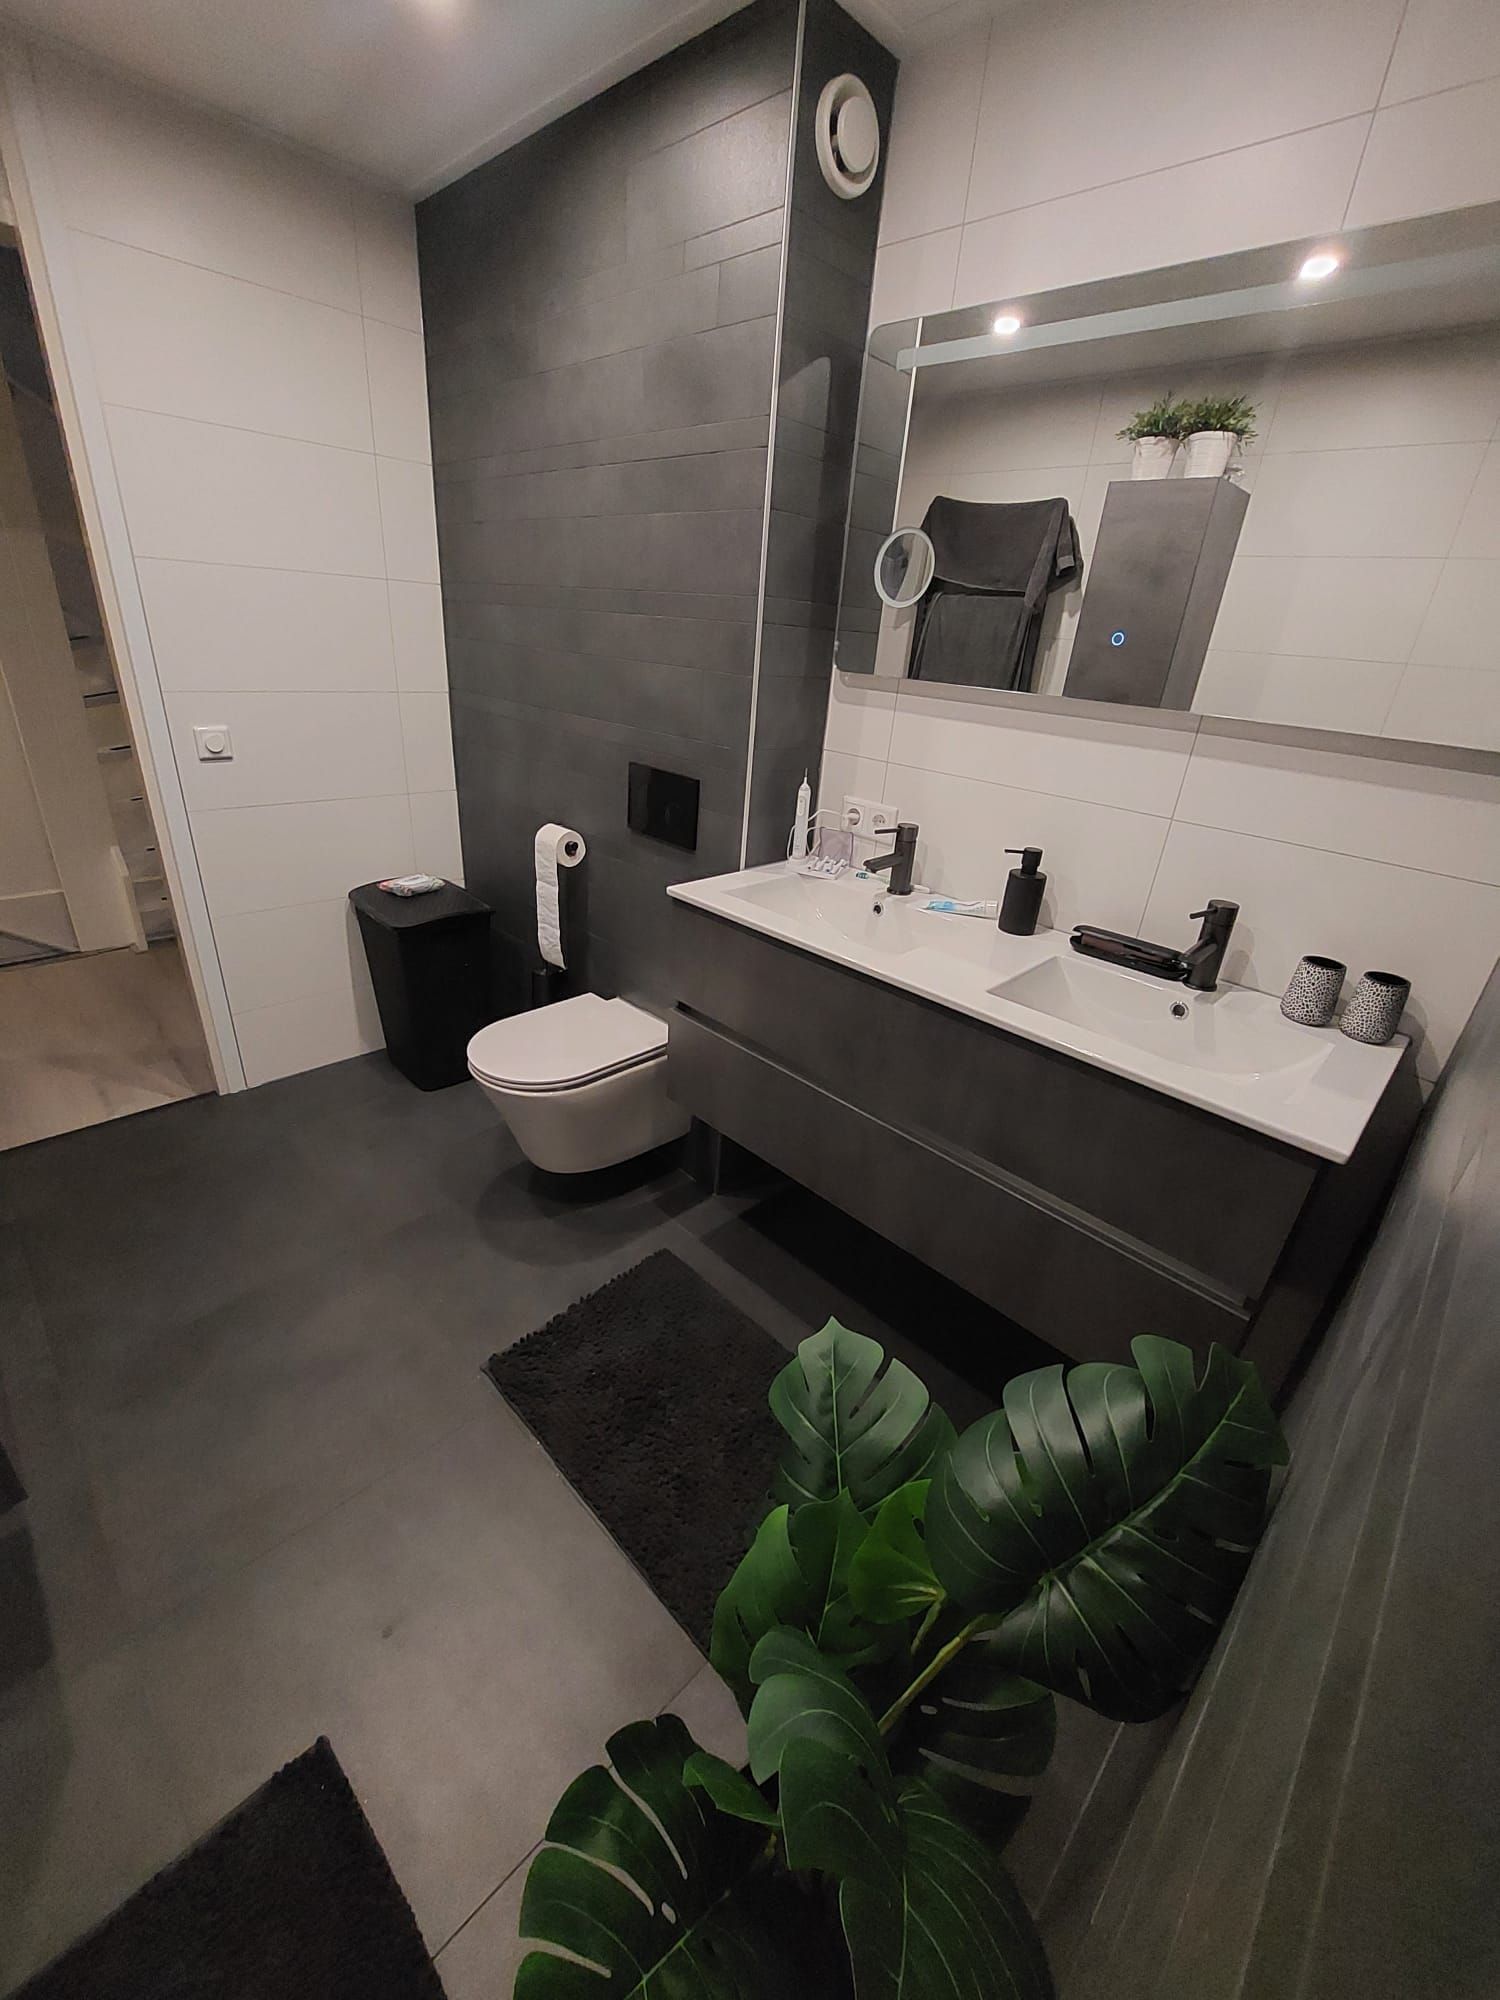 Badkamer en toilet opgeleverd in Veendam.